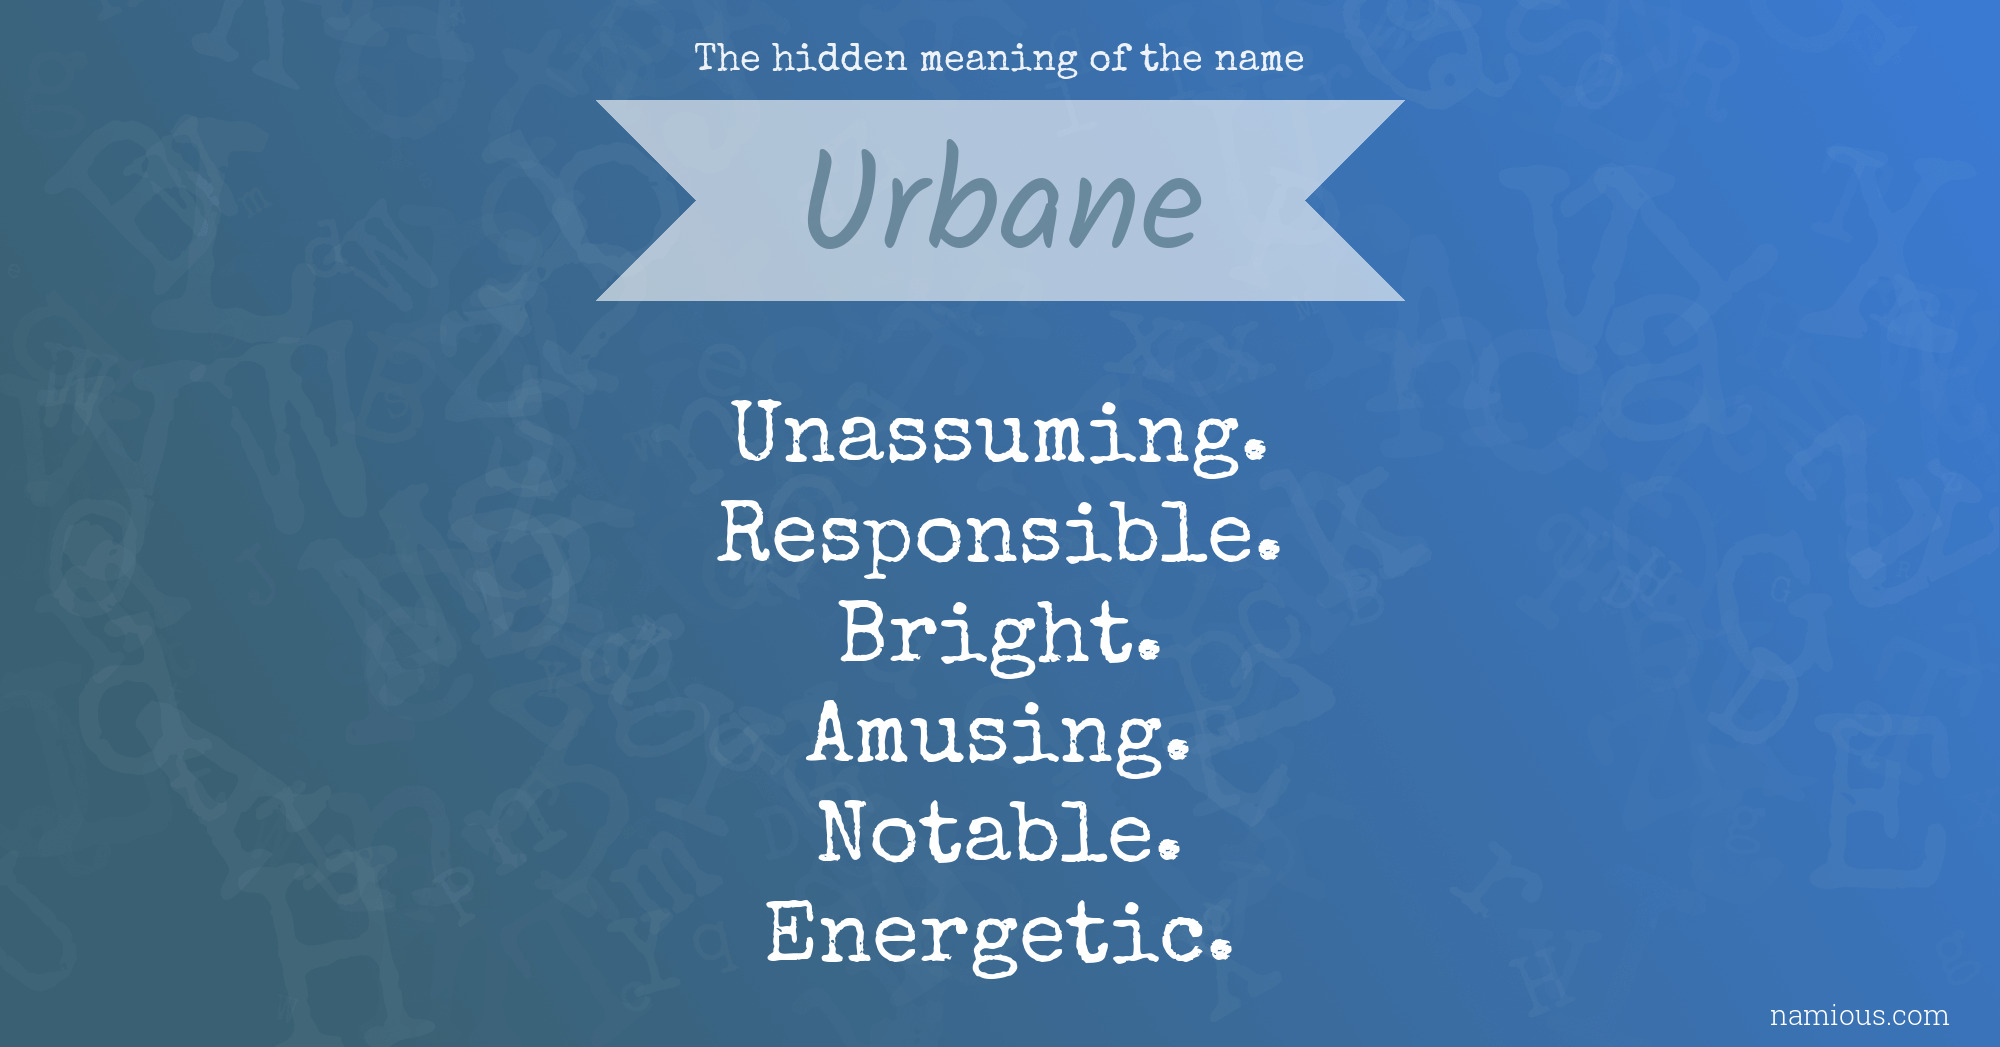 urbane definition